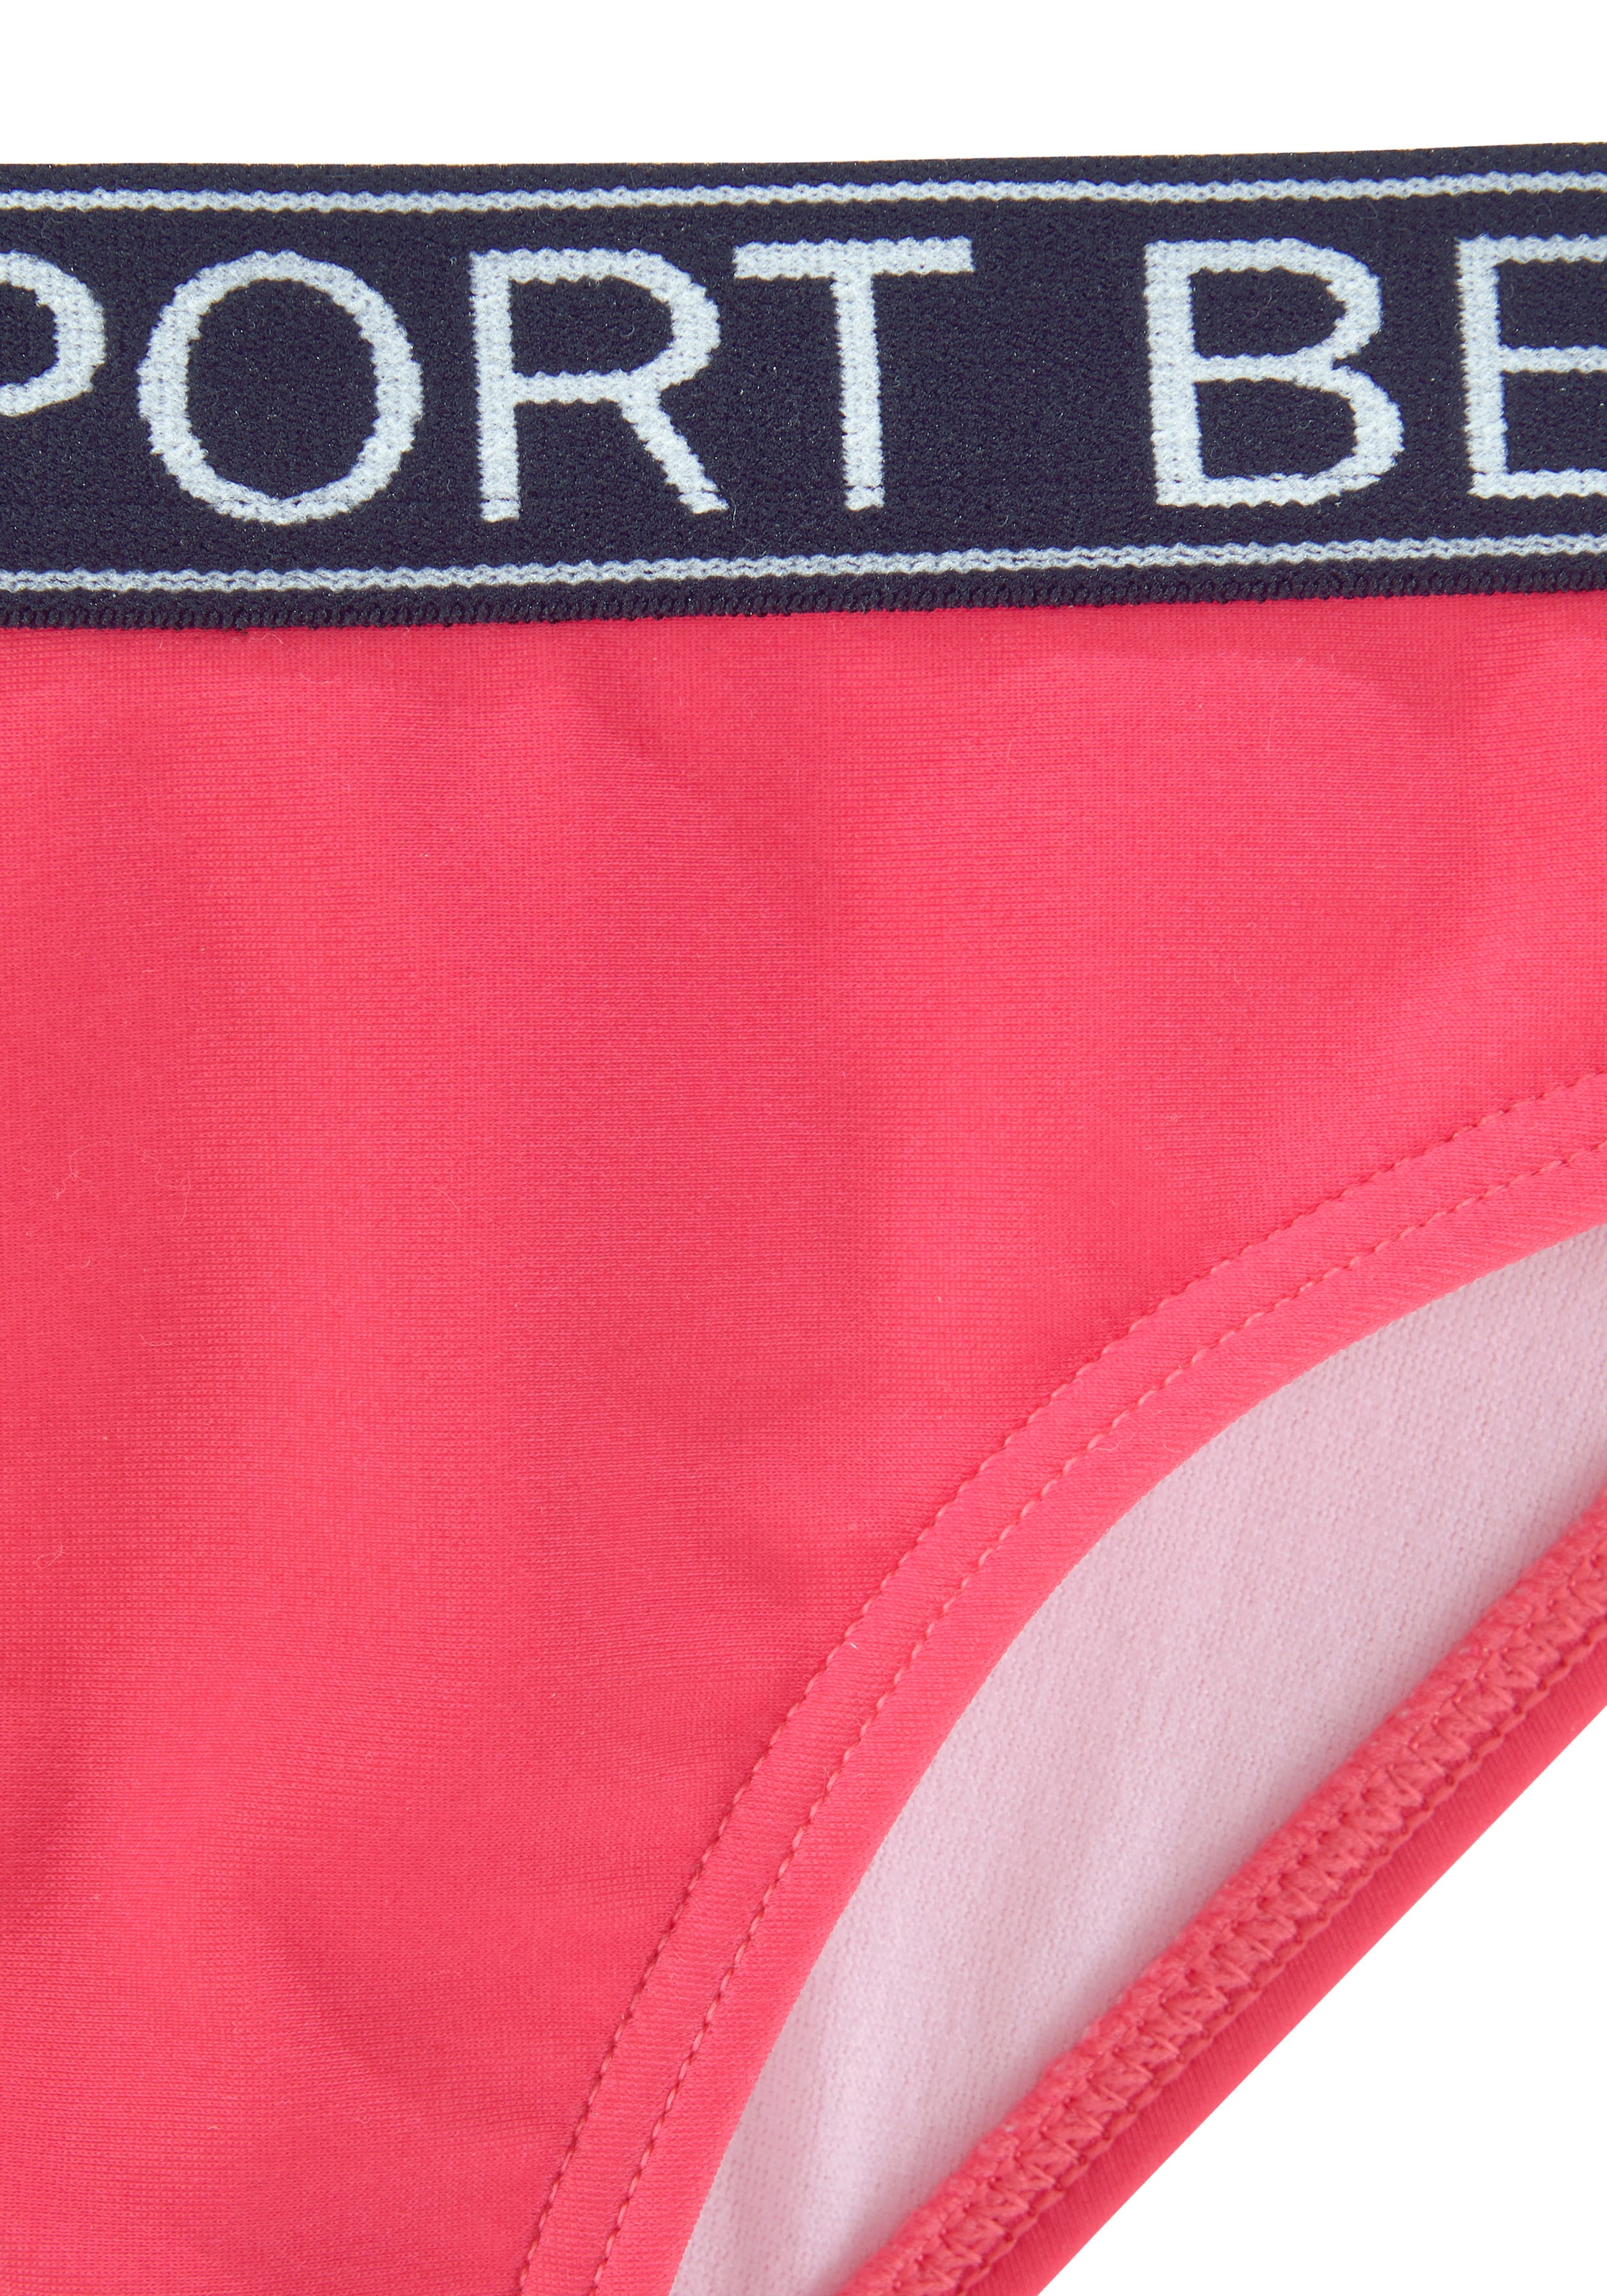 Bench. Bustier-Bikini »Yva Kids«, in sportlichem Design und Farben